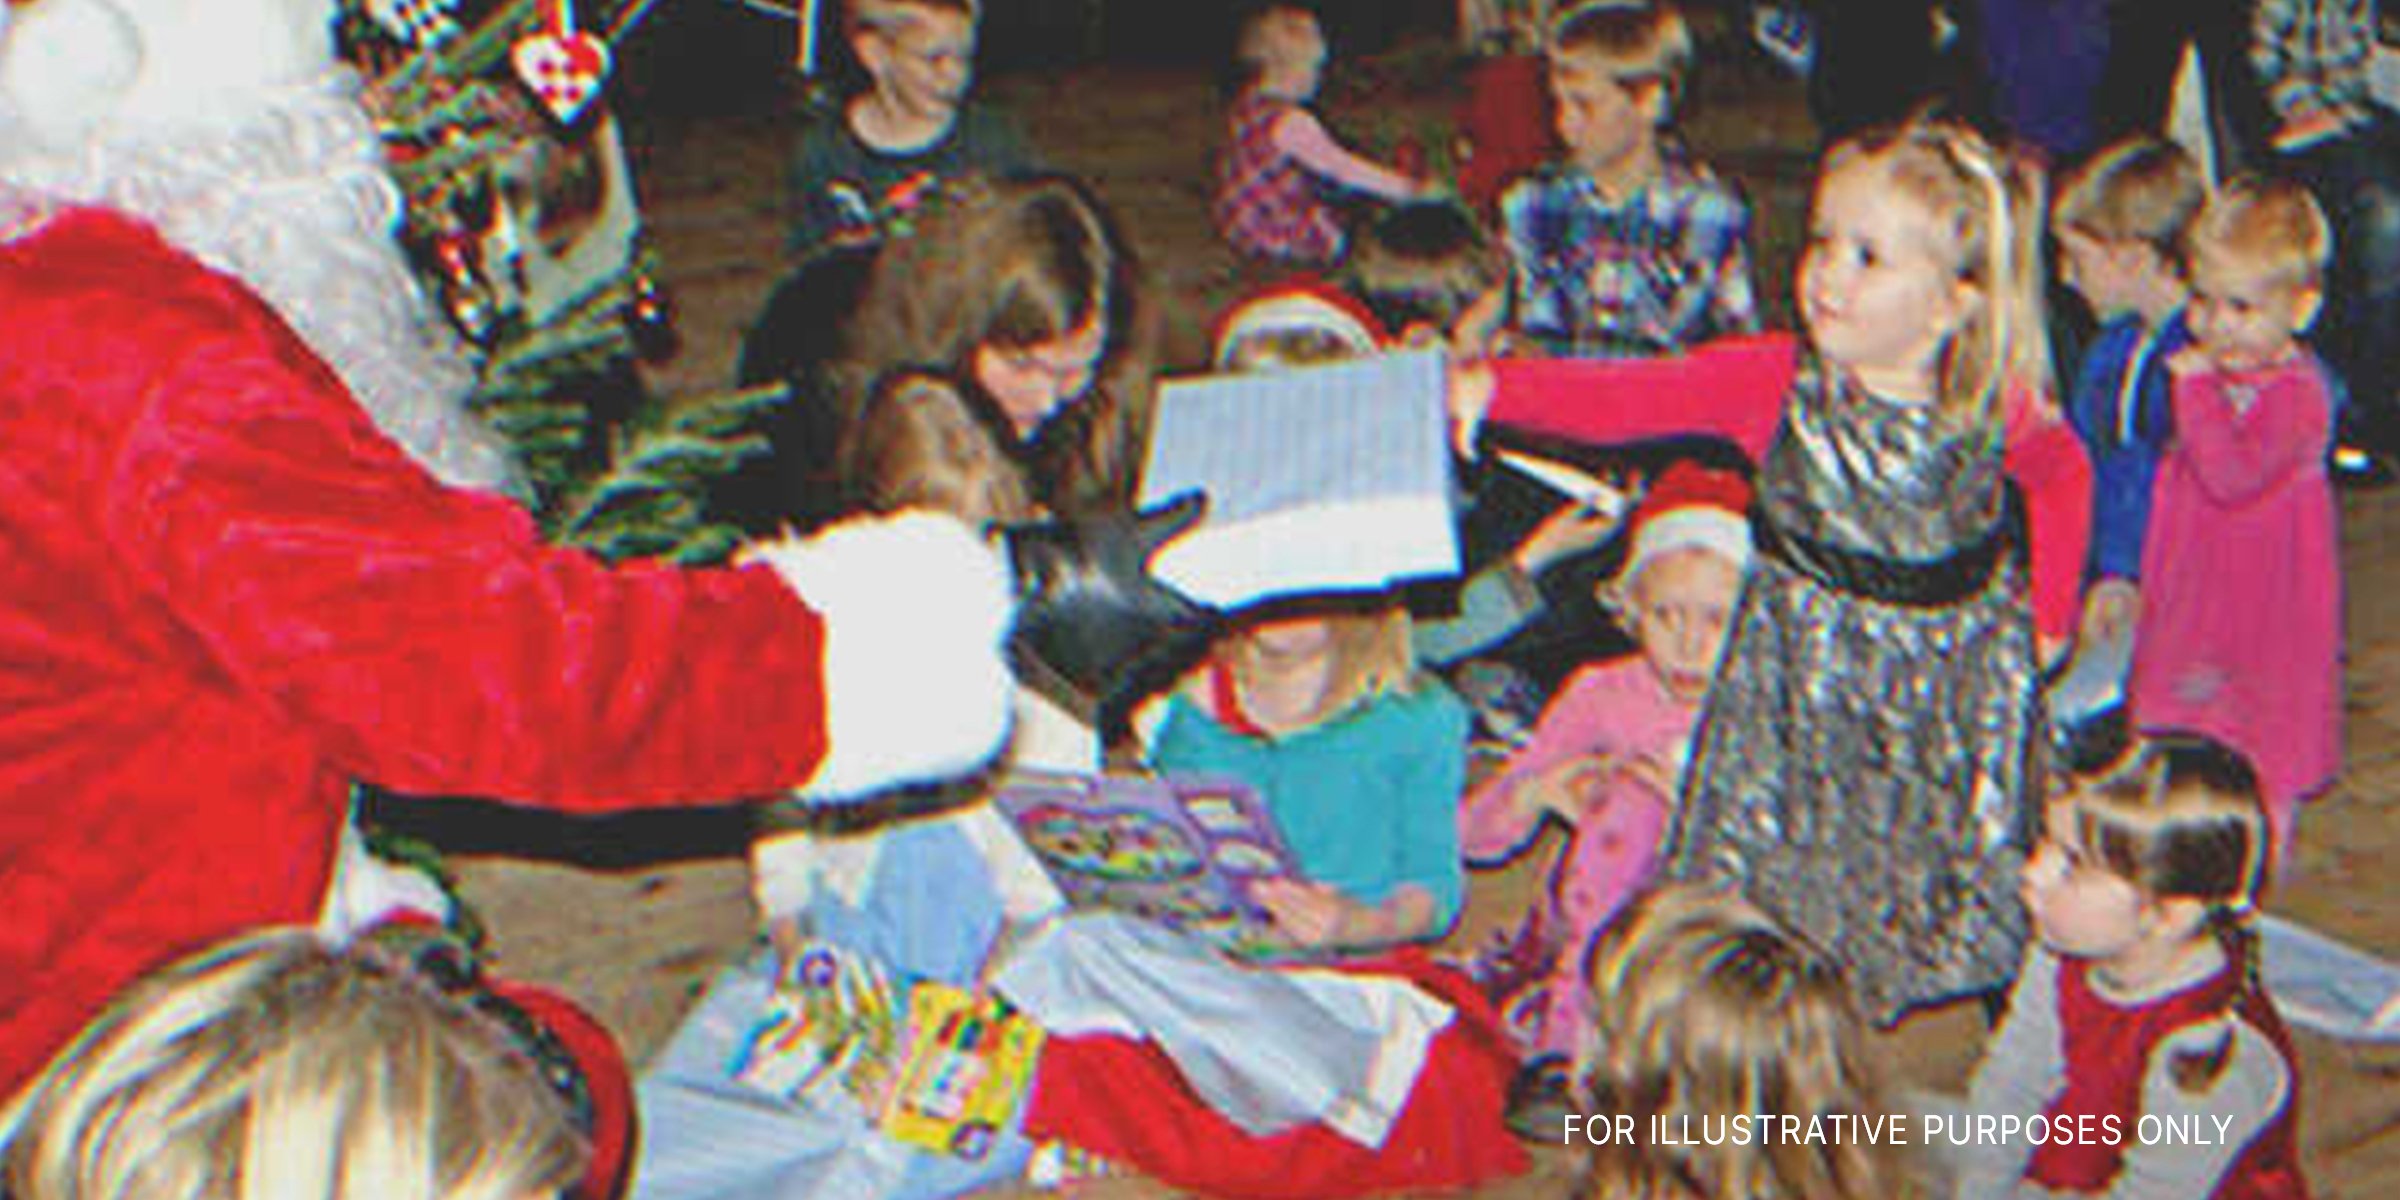 Der Weihnachtsmann verteilt Geschenke an Kinder. | Quelle: Flickr / viralbus (CC BY-SA 2.0)